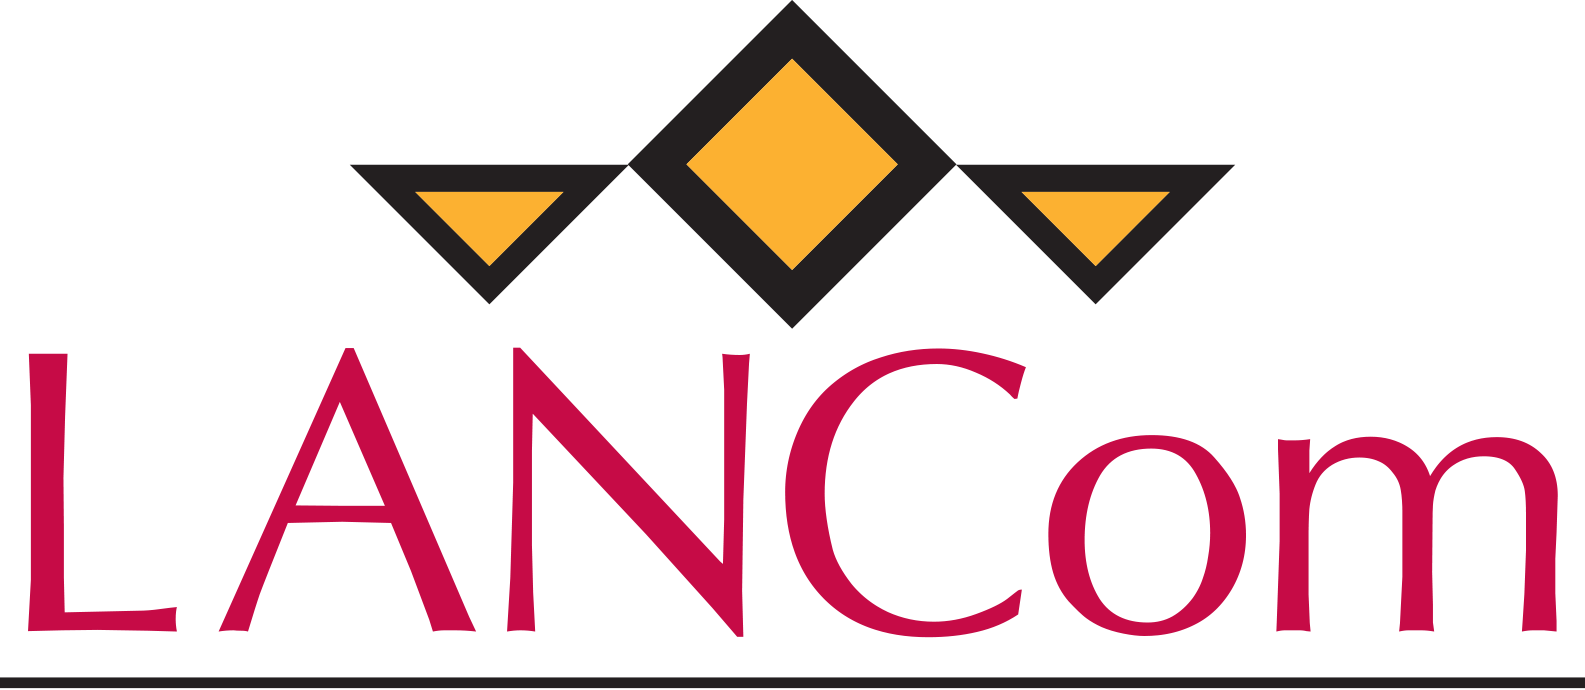 lancom-logo-transparent-v1-2017